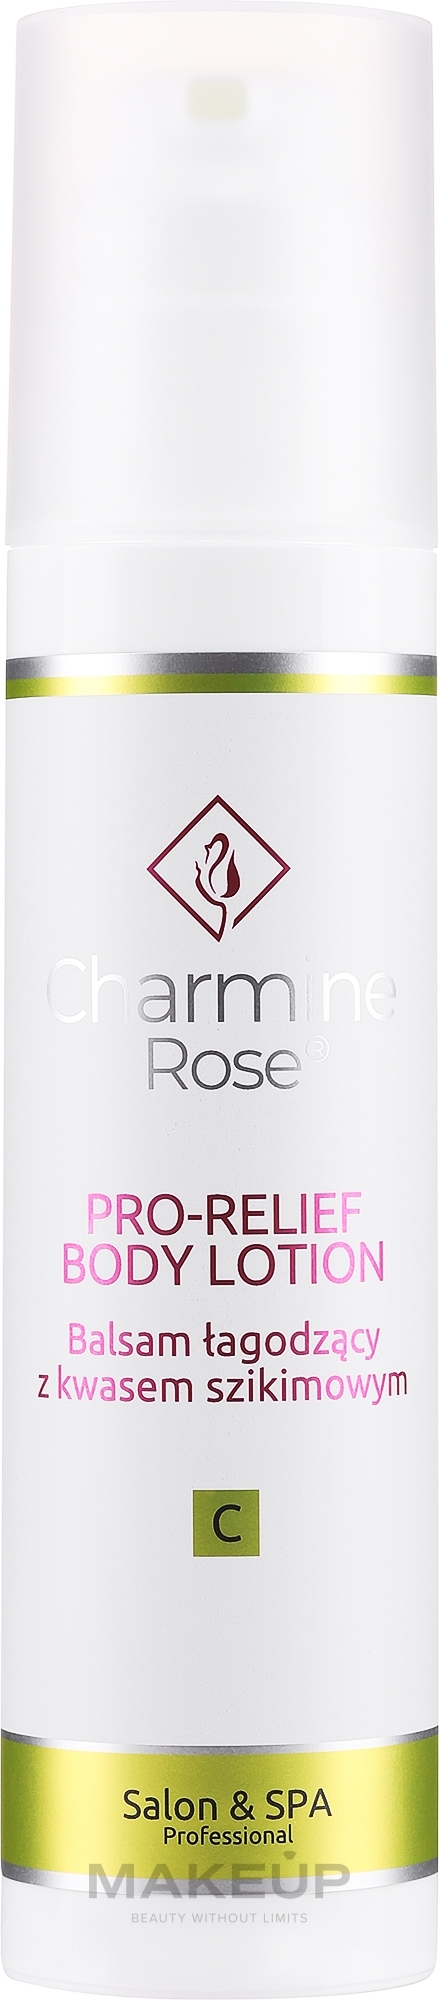 Łagodzący balsam do ciała z kwasem szikimowym - Charmine Rose Pro-Relief Body Lotion — Zdjęcie 200 ml